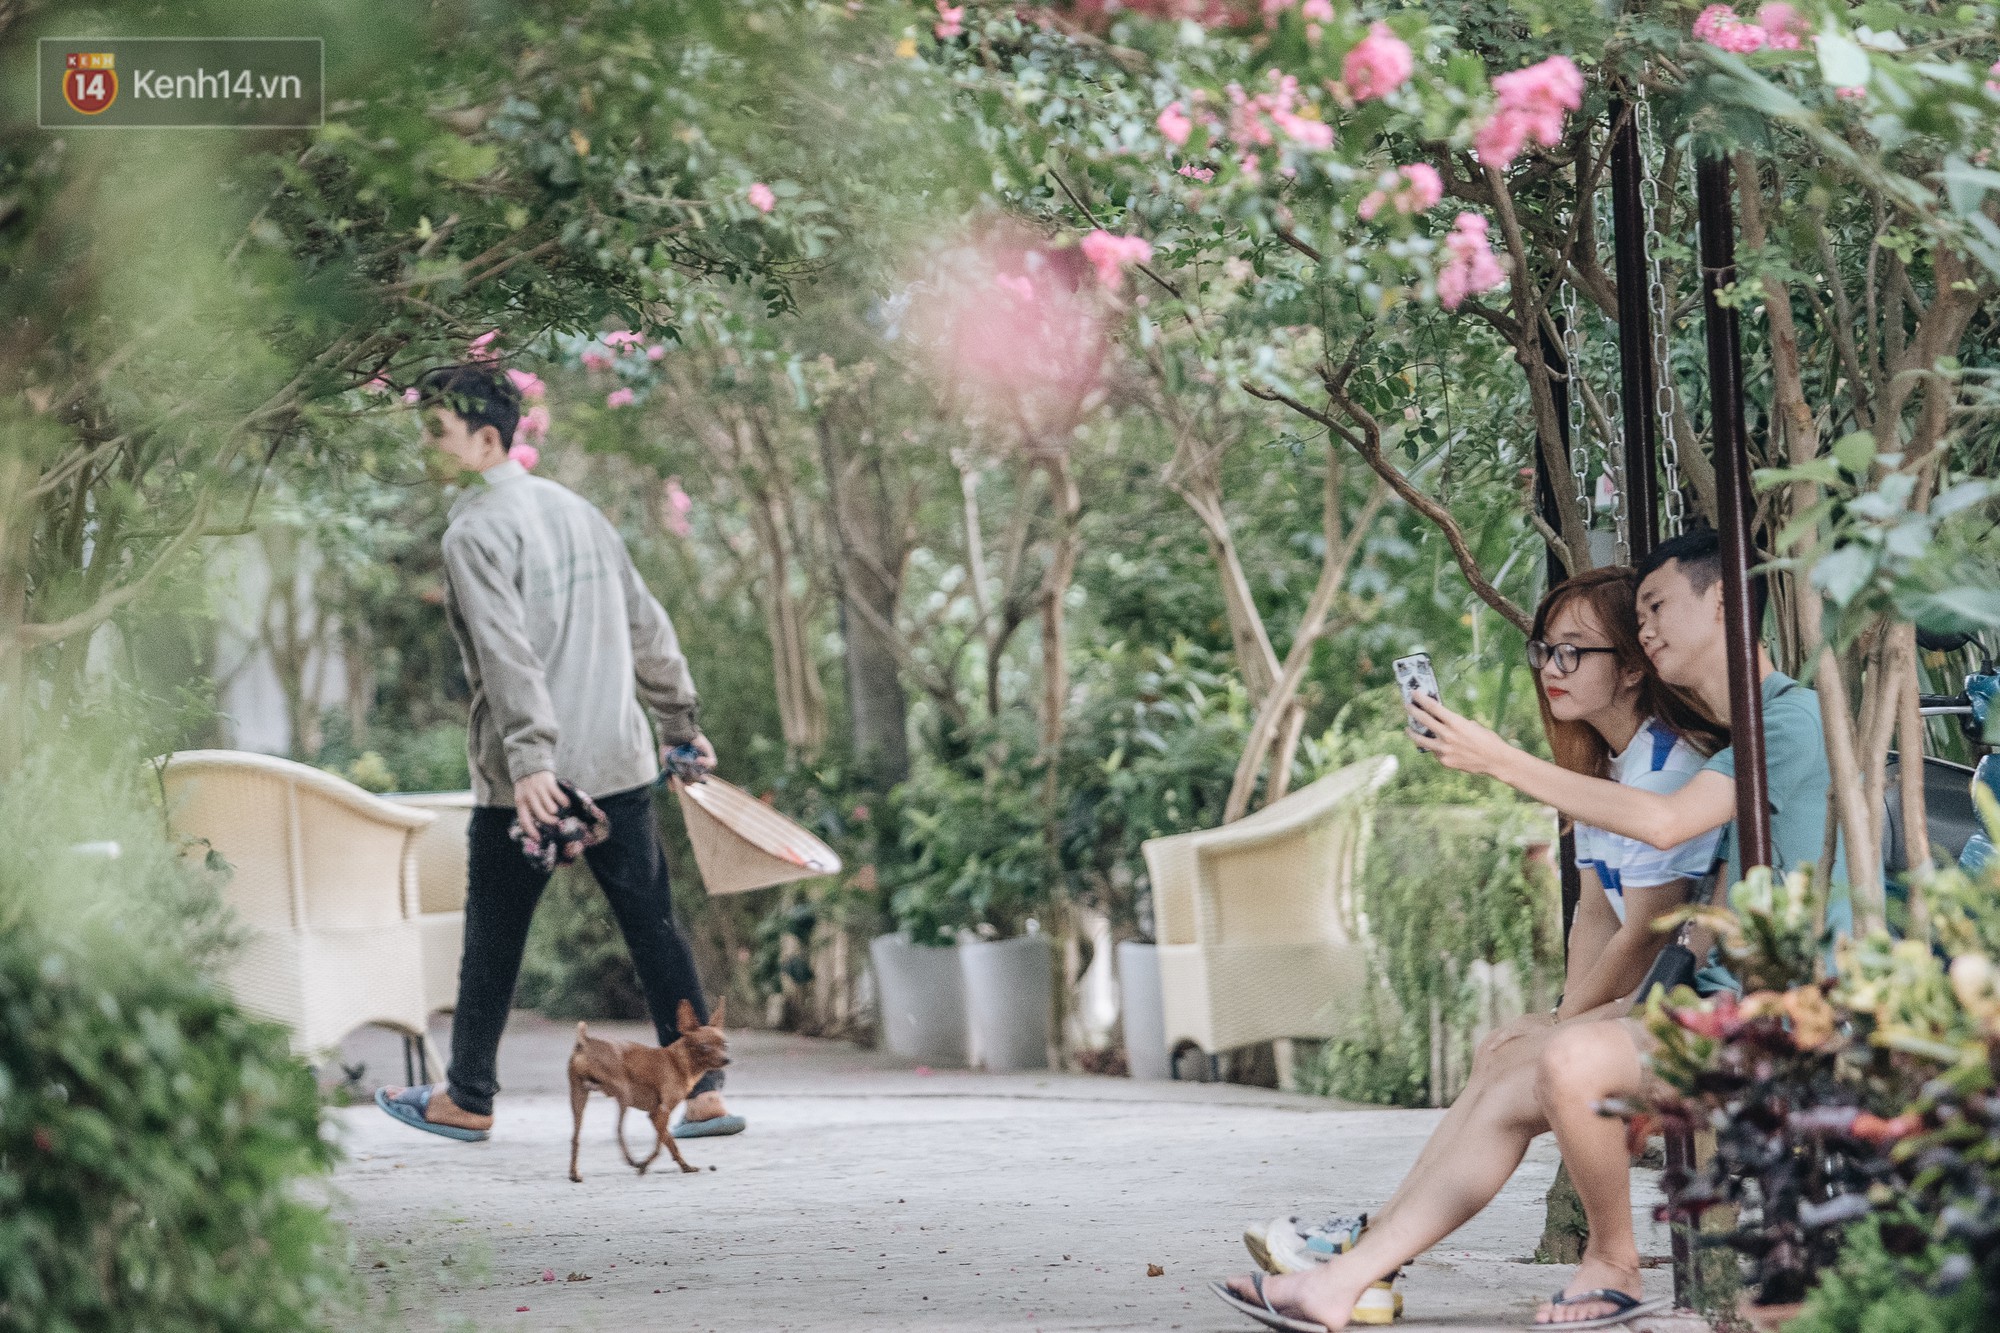 Chùm ảnh: Con đường ở Hà Nội được tạo nên bởi 100 gốc hoa tường vi đẹp như khu vườn cổ tích - Ảnh 6.